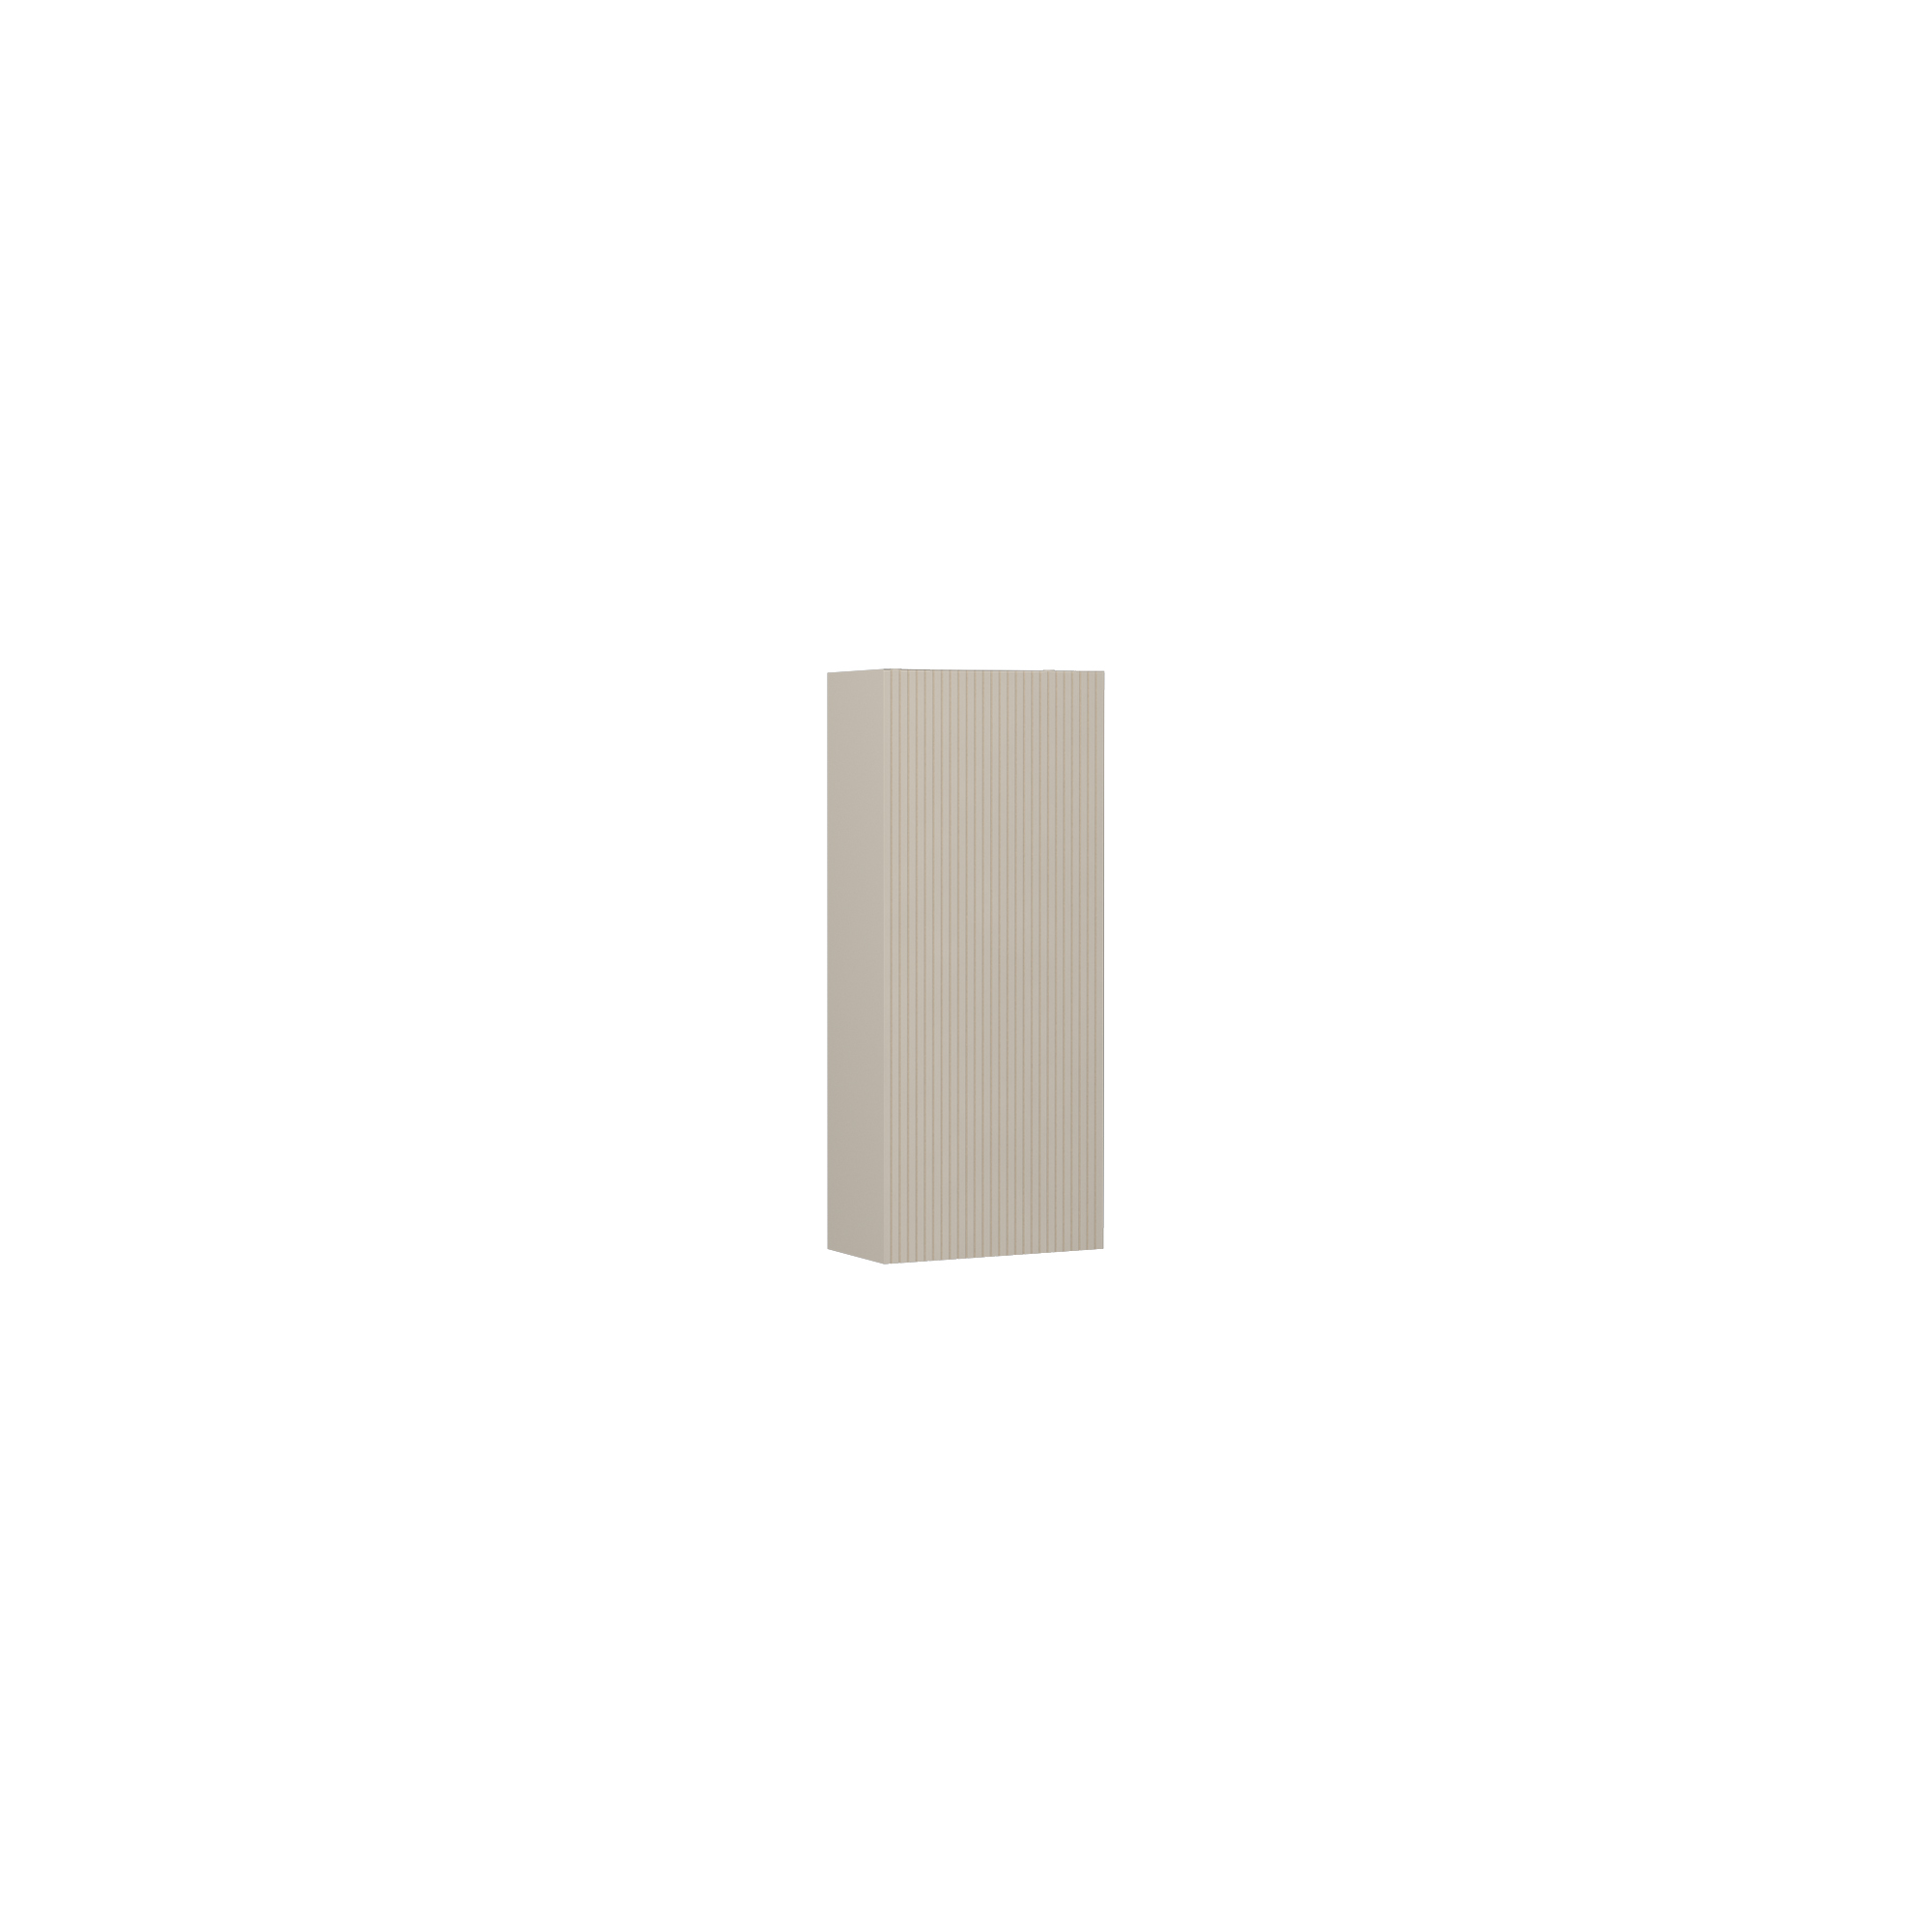 Infinity Washbasin Cabinet Cream, with Ivory Washbasin 130 cm